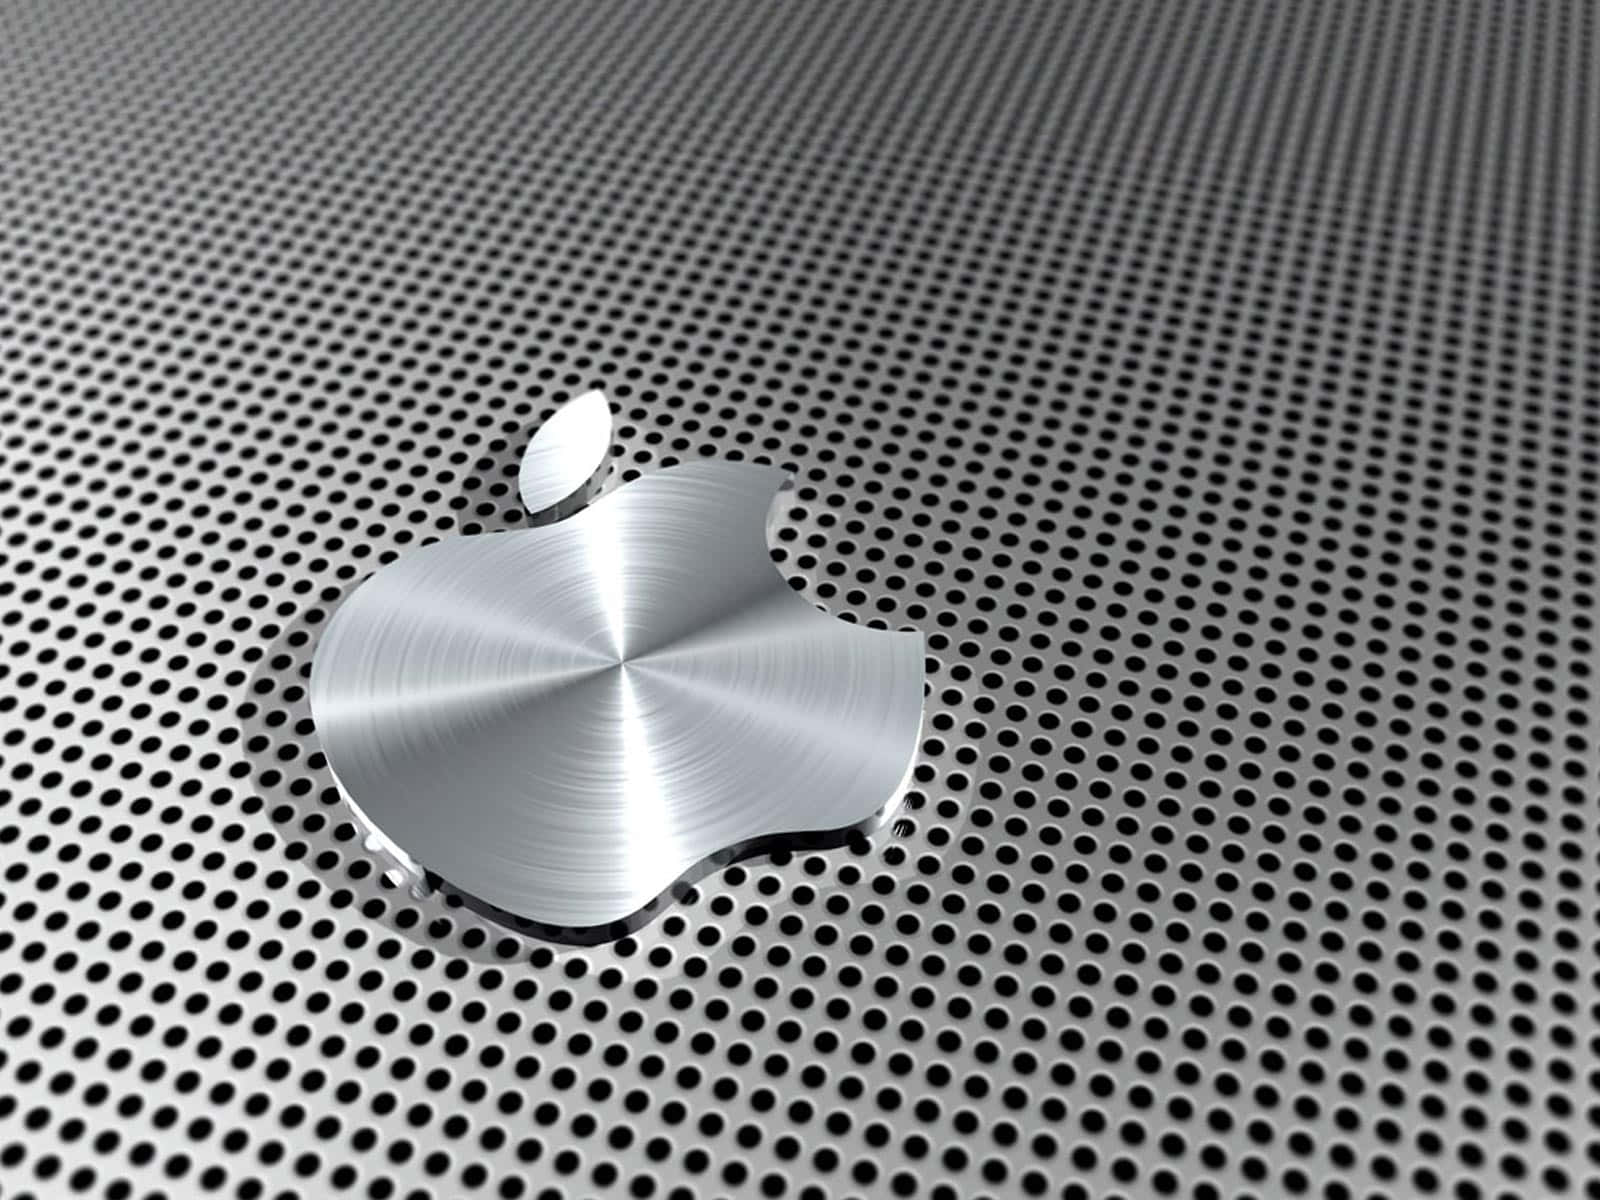 Derneue Apple Laptop: Ein Schlankes, Modernes Design, Das Eleganz Und Funktionalität Vereint. Wallpaper